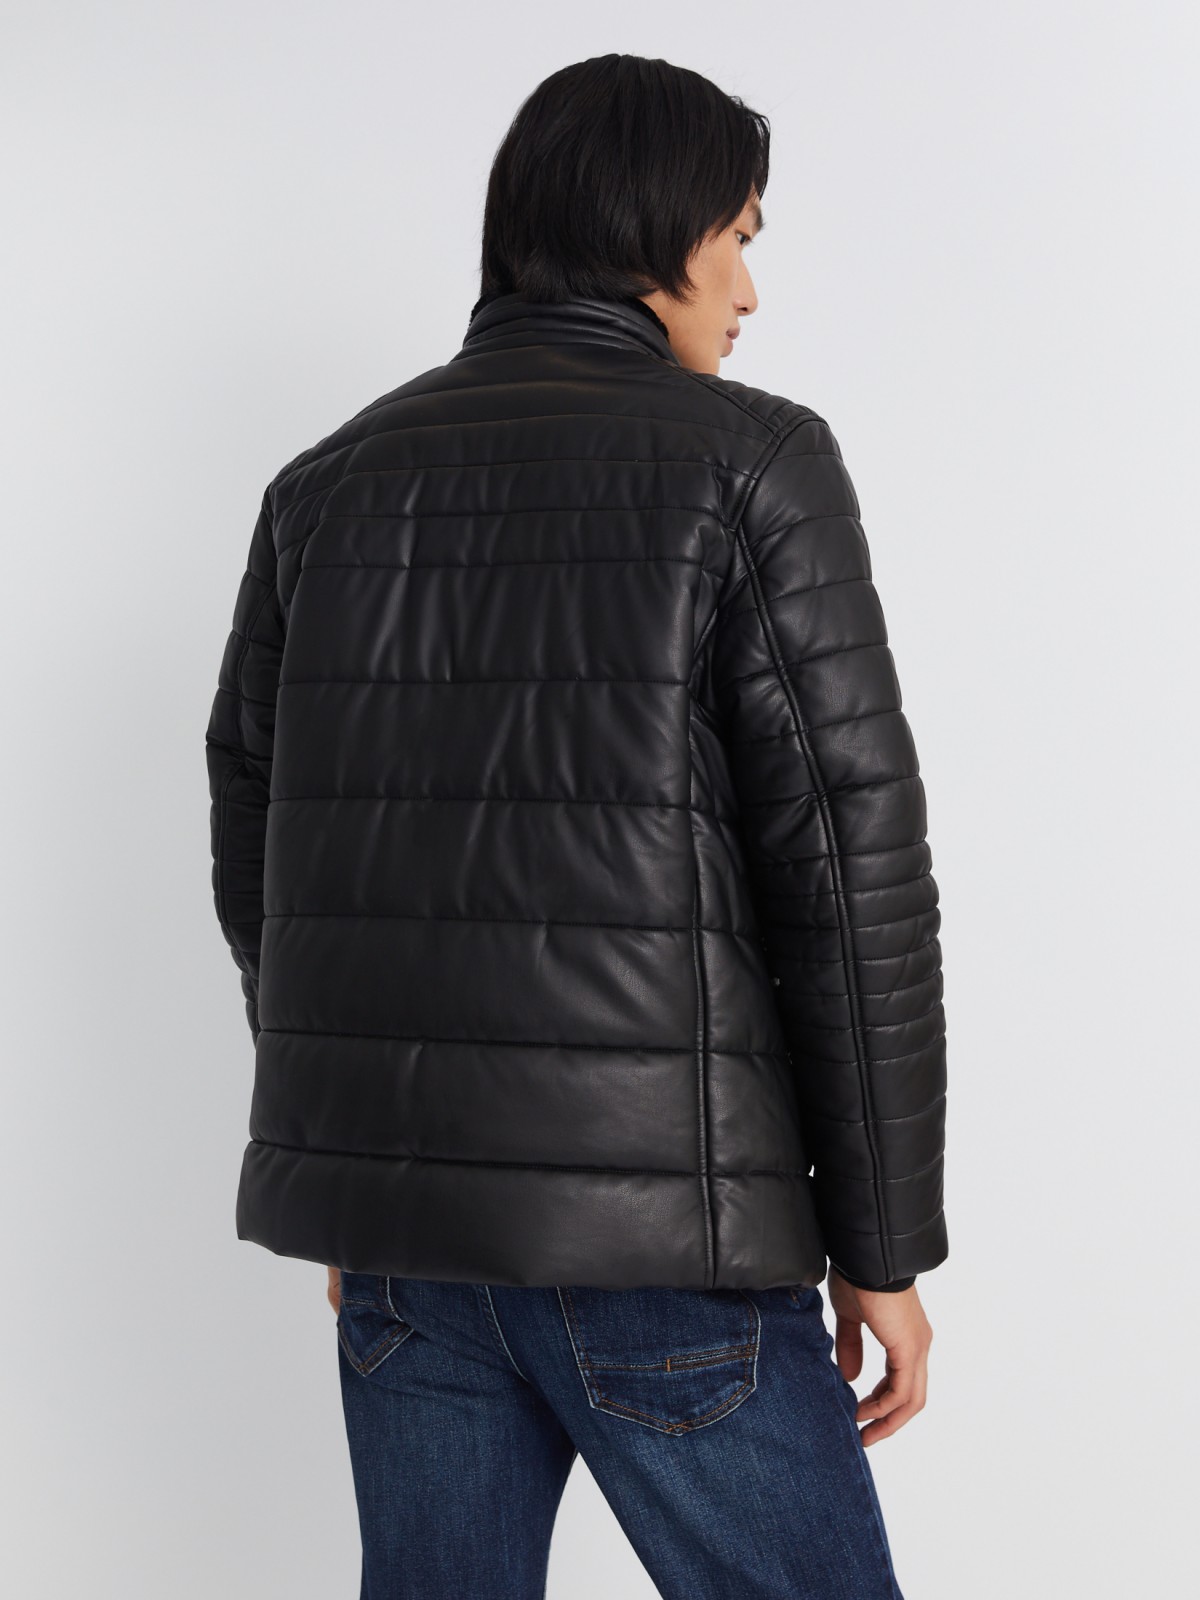 Тёплая стёганая куртка из экокожи на синтепоне с воротником-стойкой zolla 013345150014, цвет черный, размер S - фото 6